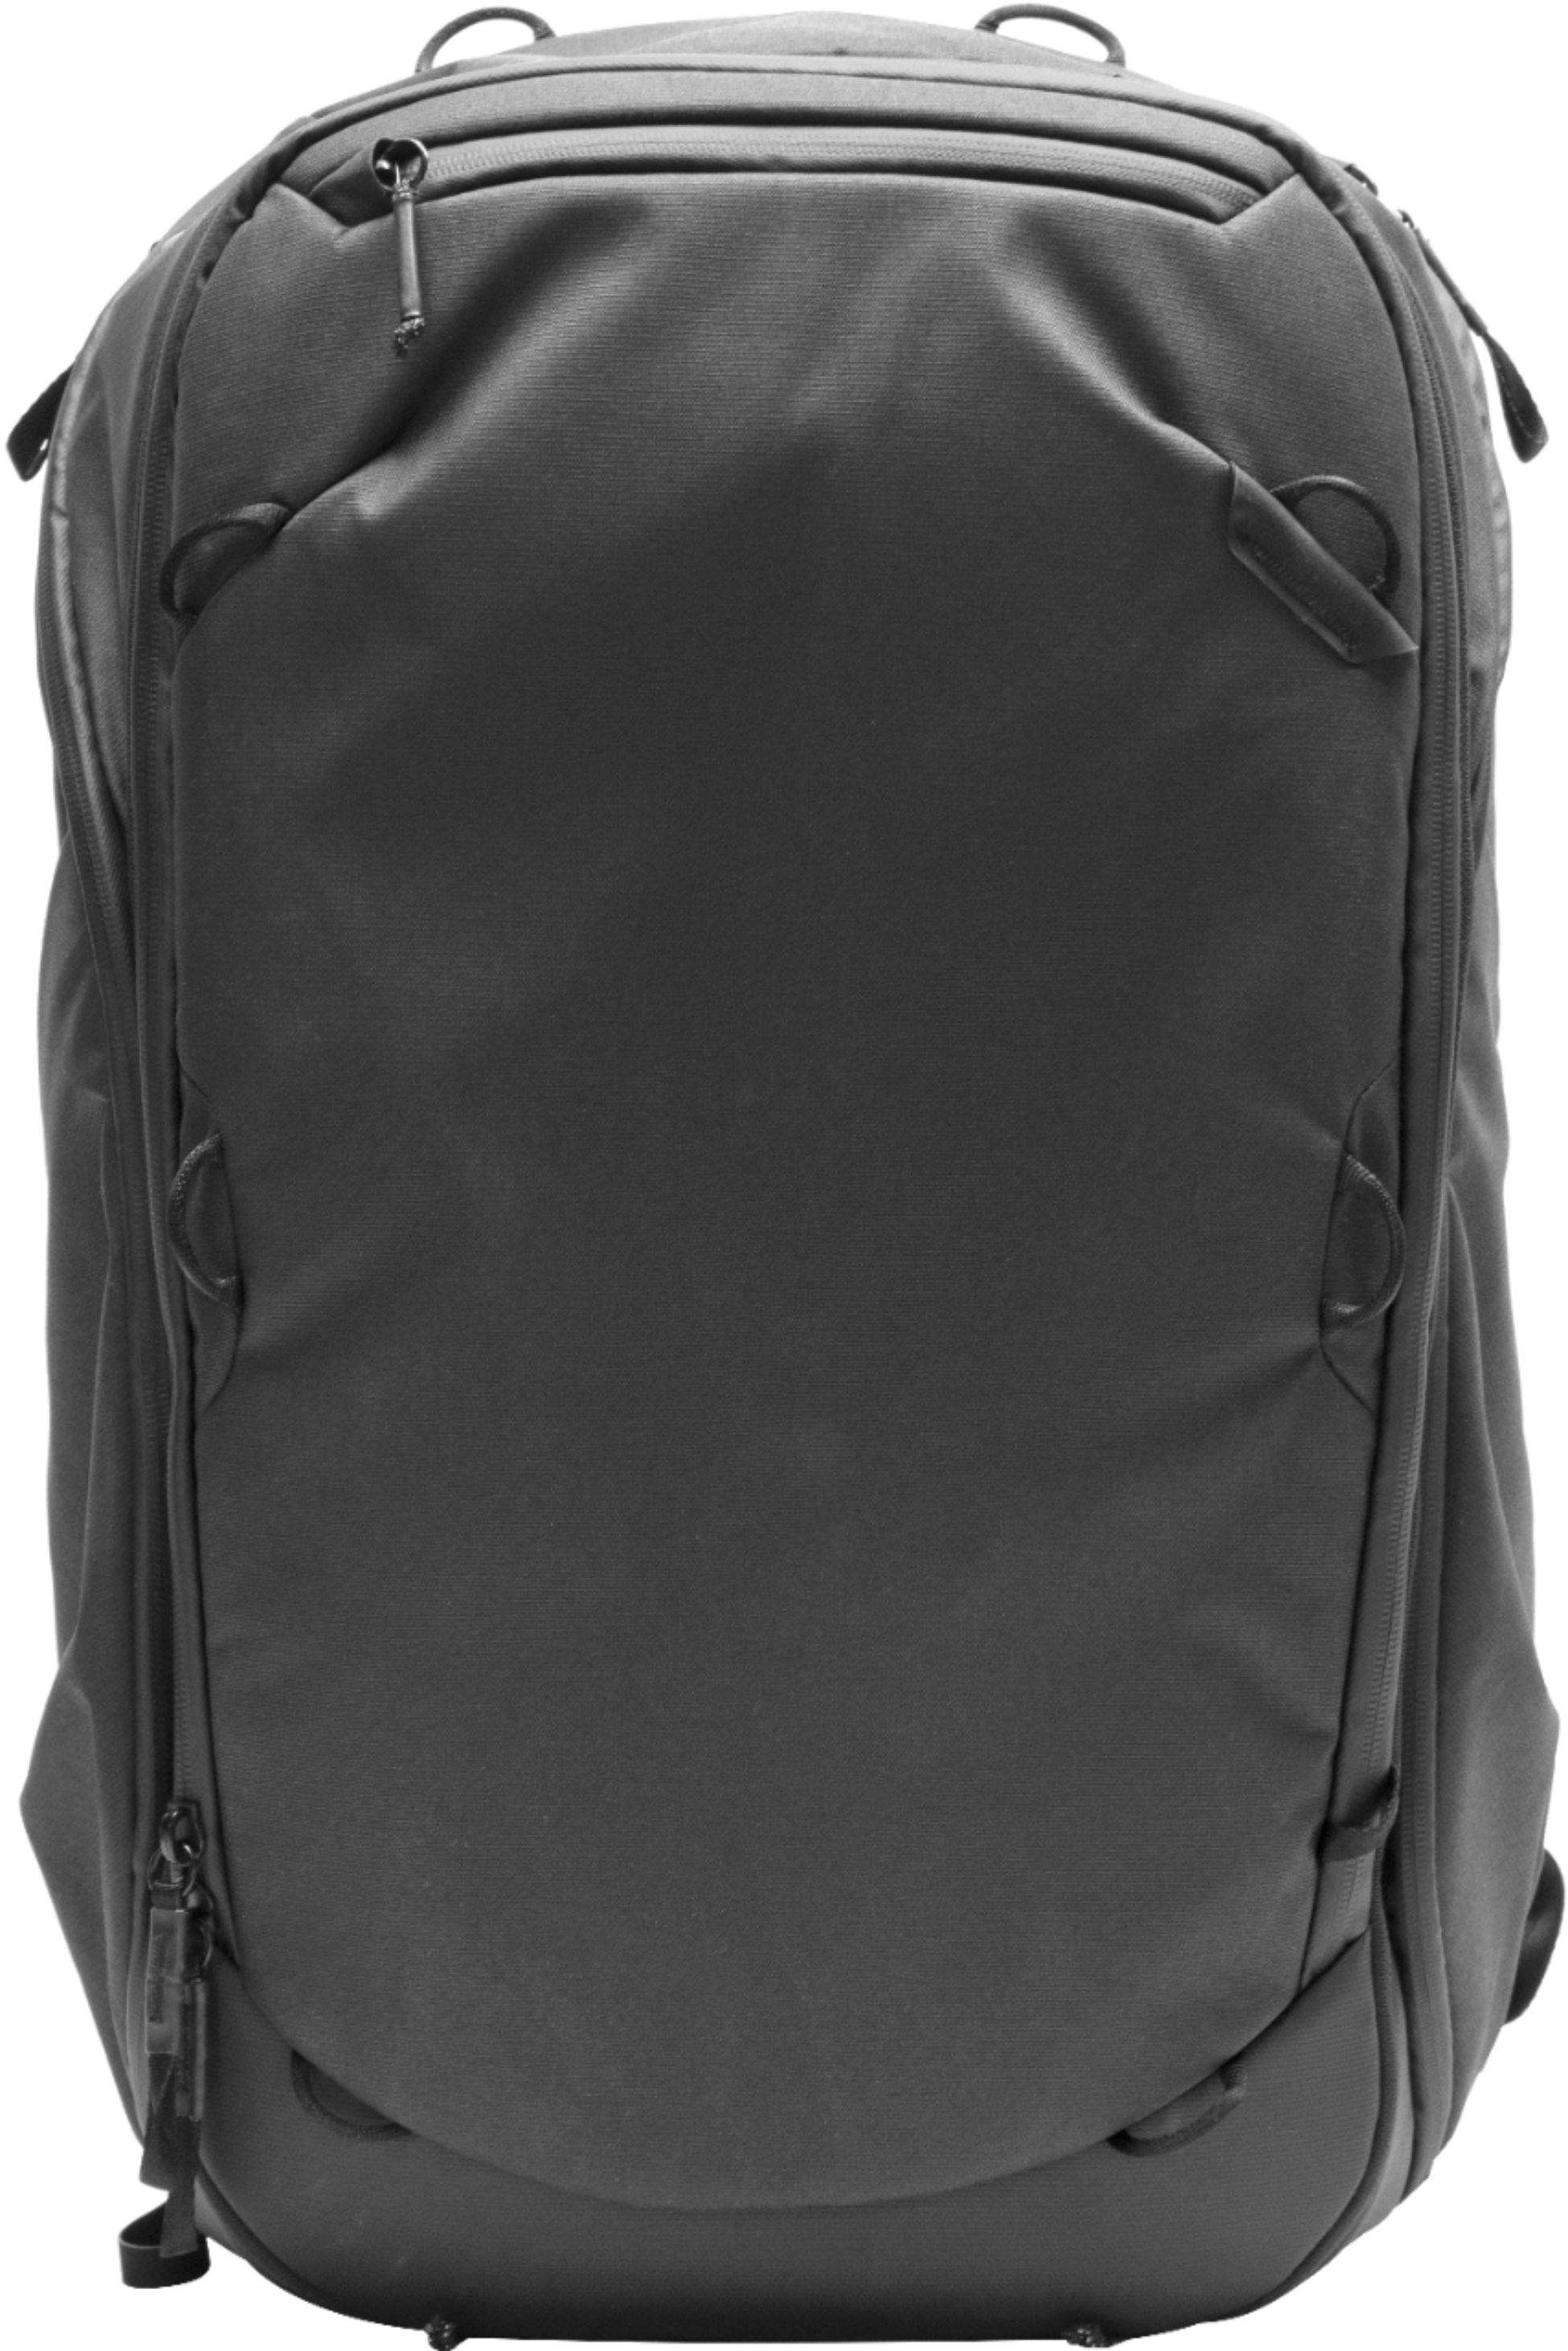 Left View: Peak Design - Travel Backpack 45L - Black